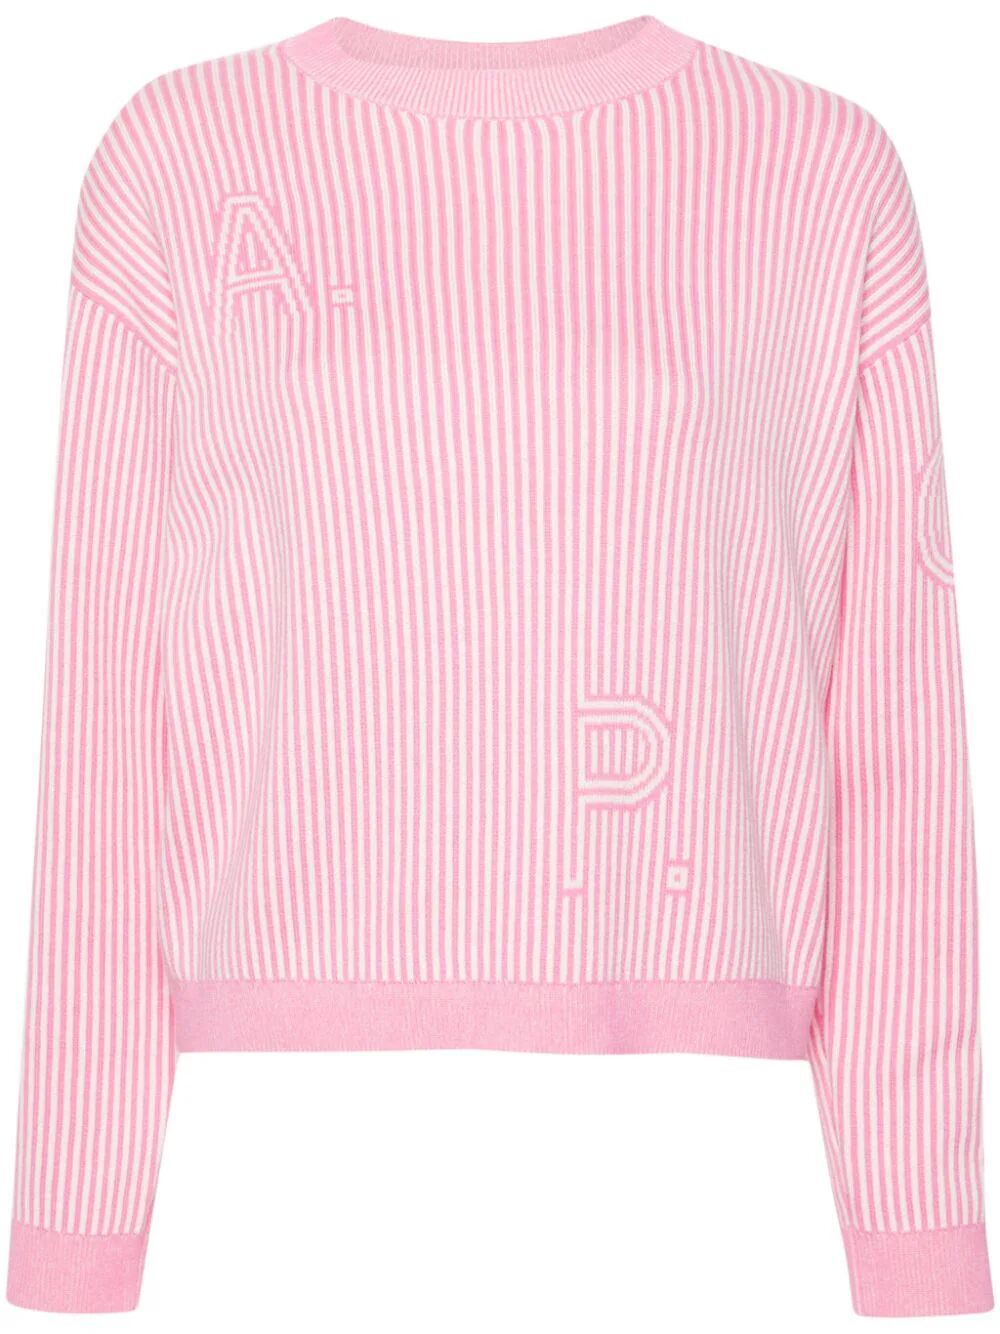 striped cotton jumper